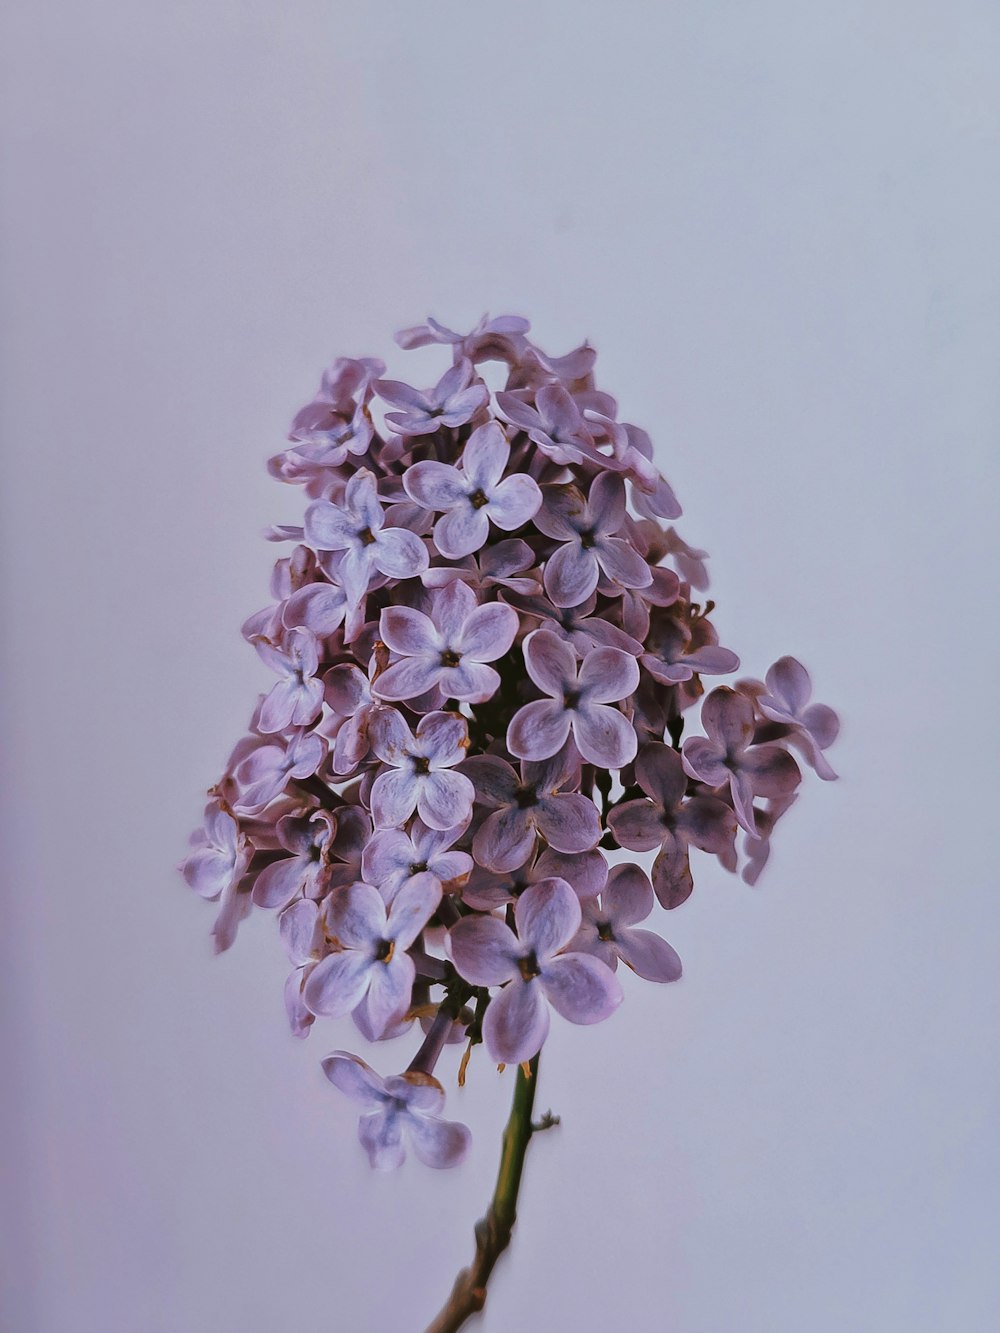 flor roxa e branca na fotografia de perto